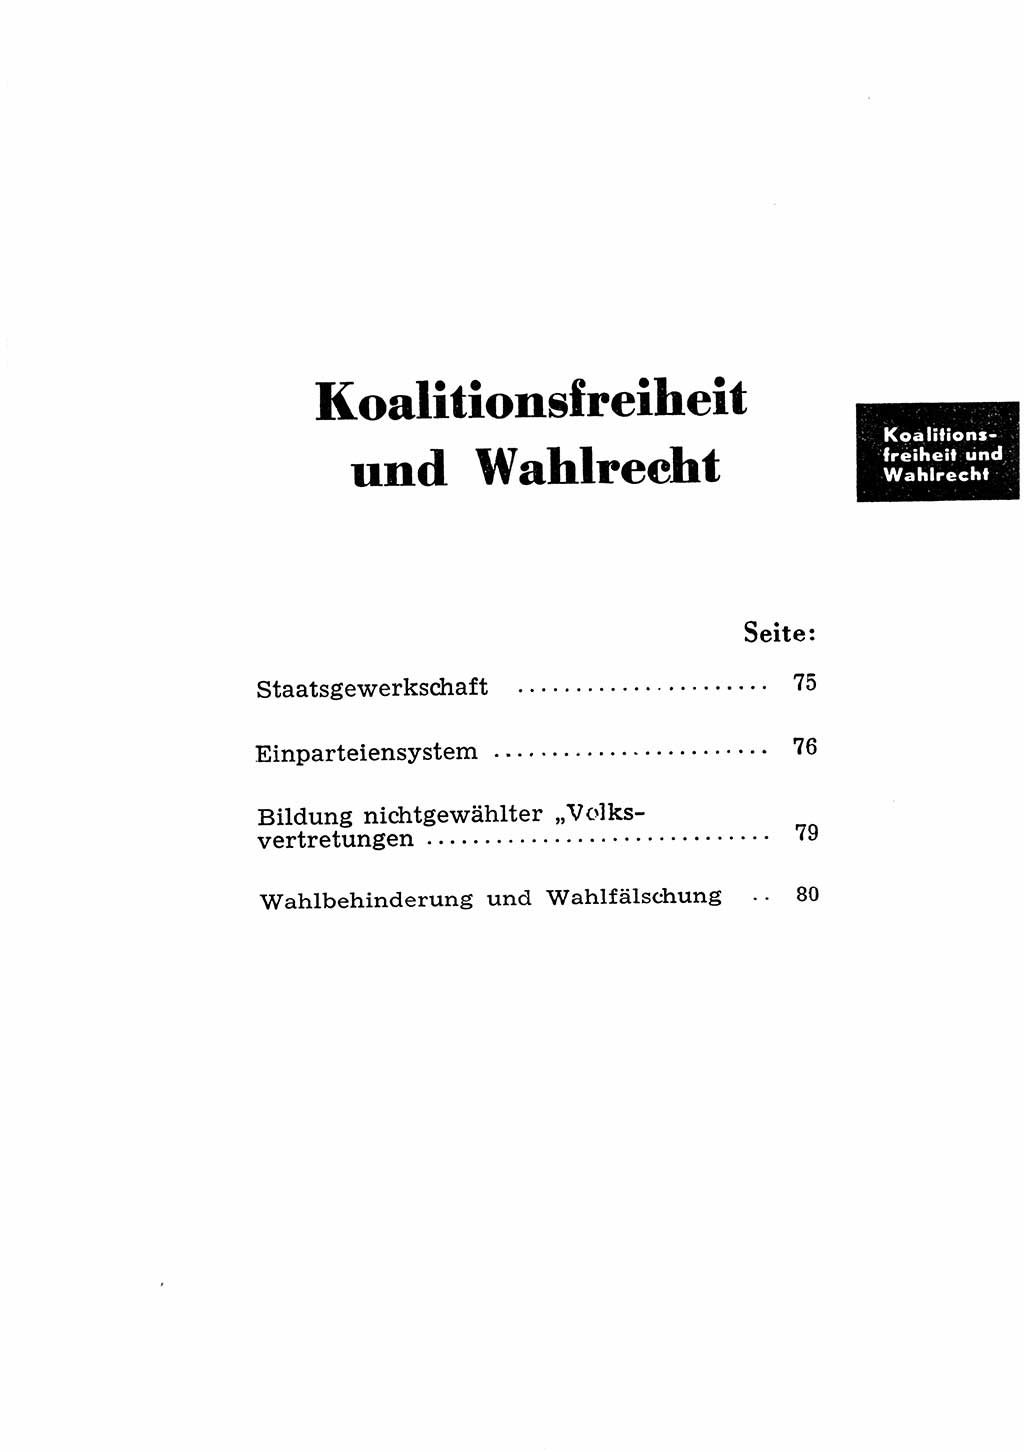 Katalog des Unrechts, Untersuchungsausschuß Freiheitlicher Juristen (UfJ) [Bundesrepublik Deutschland (BRD)] 1956, Seite 73 (Kat. UnR. UfJ BRD 1956, S. 73)